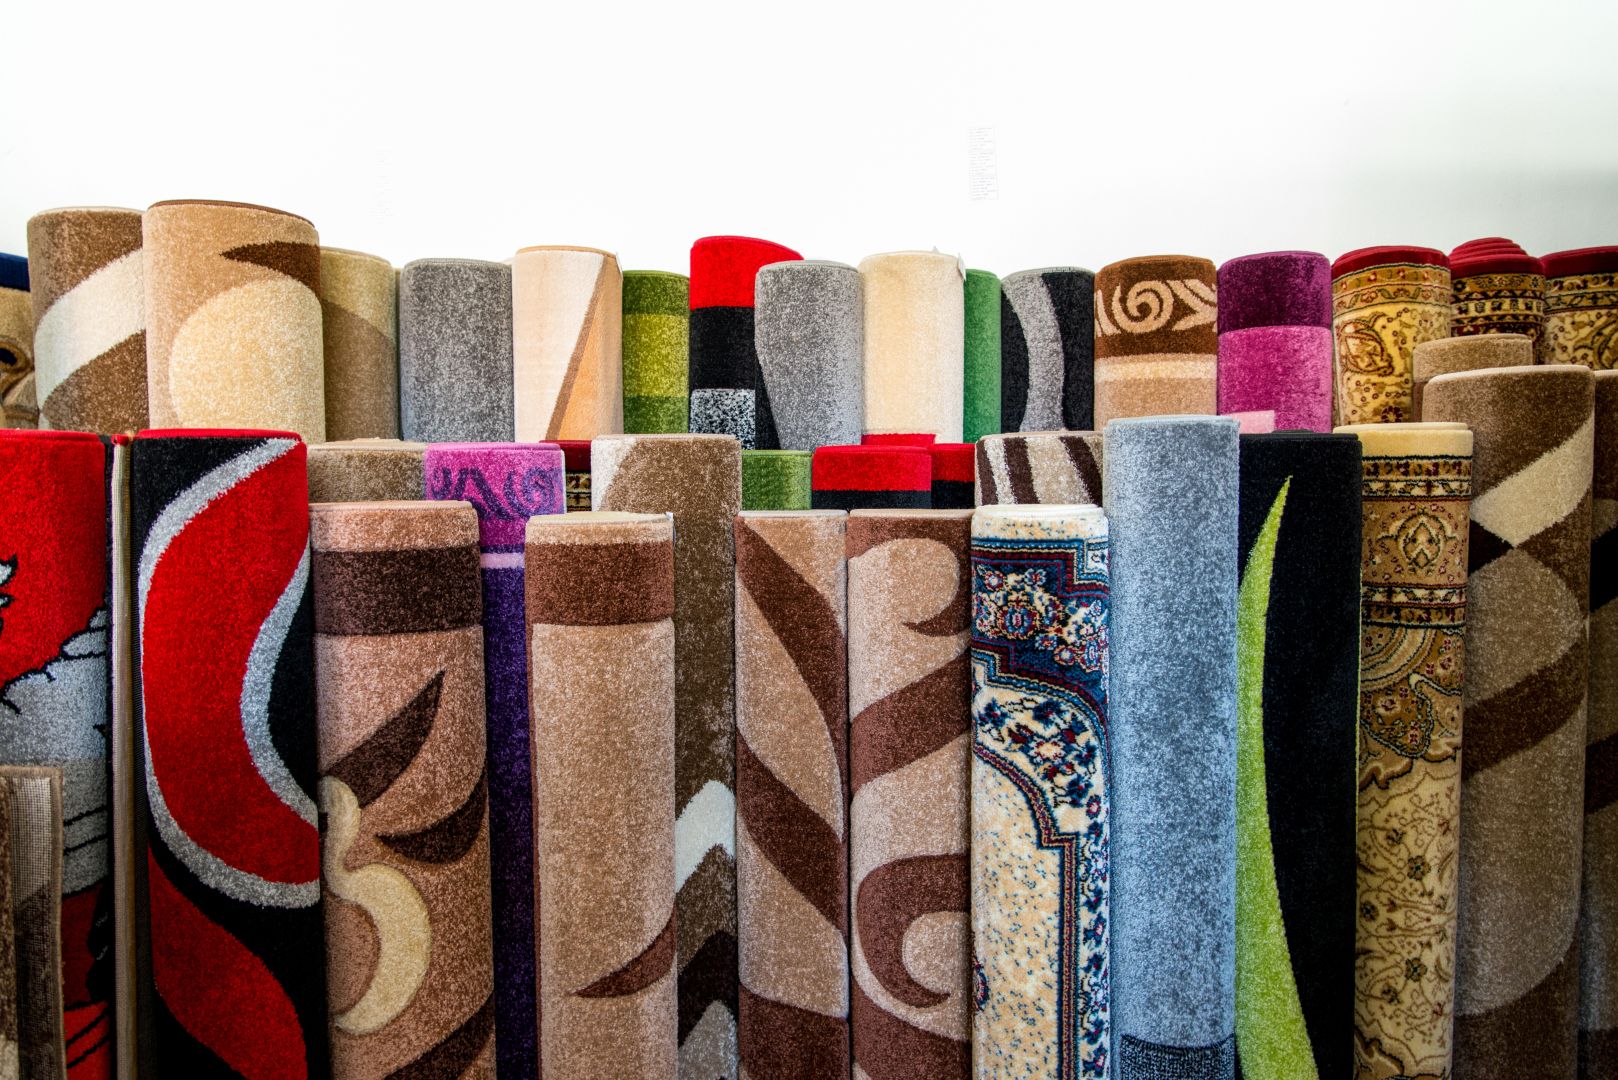 Poptávka na bytový textil pro vybavení penzionu (Bytový (a hotelový) textil) - Prachatice